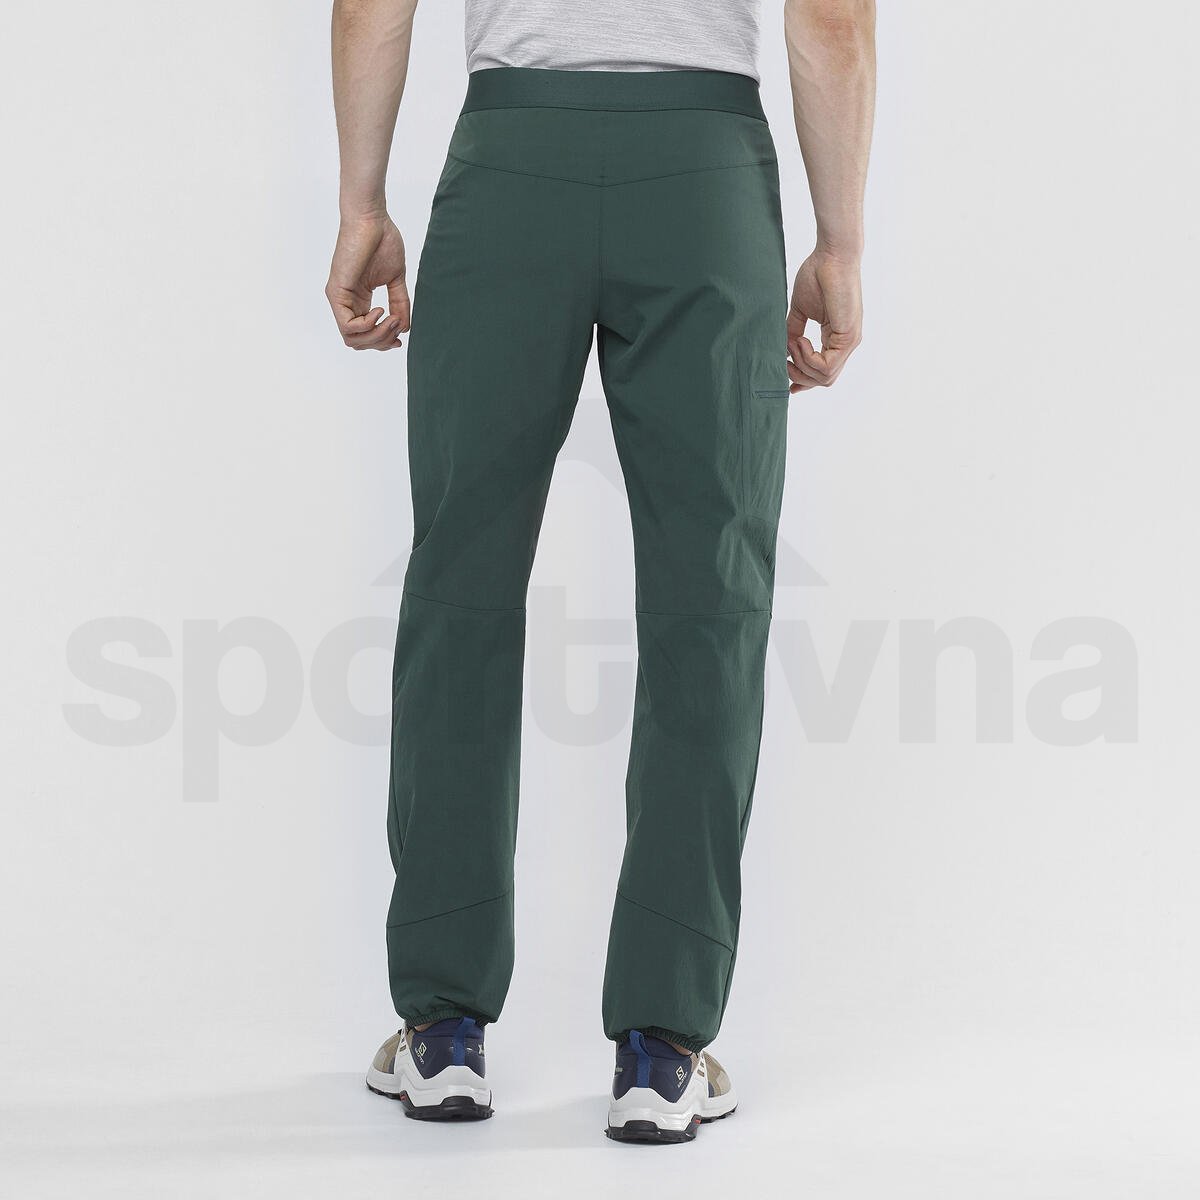 Kalhoty Salomon WAYFARER ALPINE PANT M - zelená